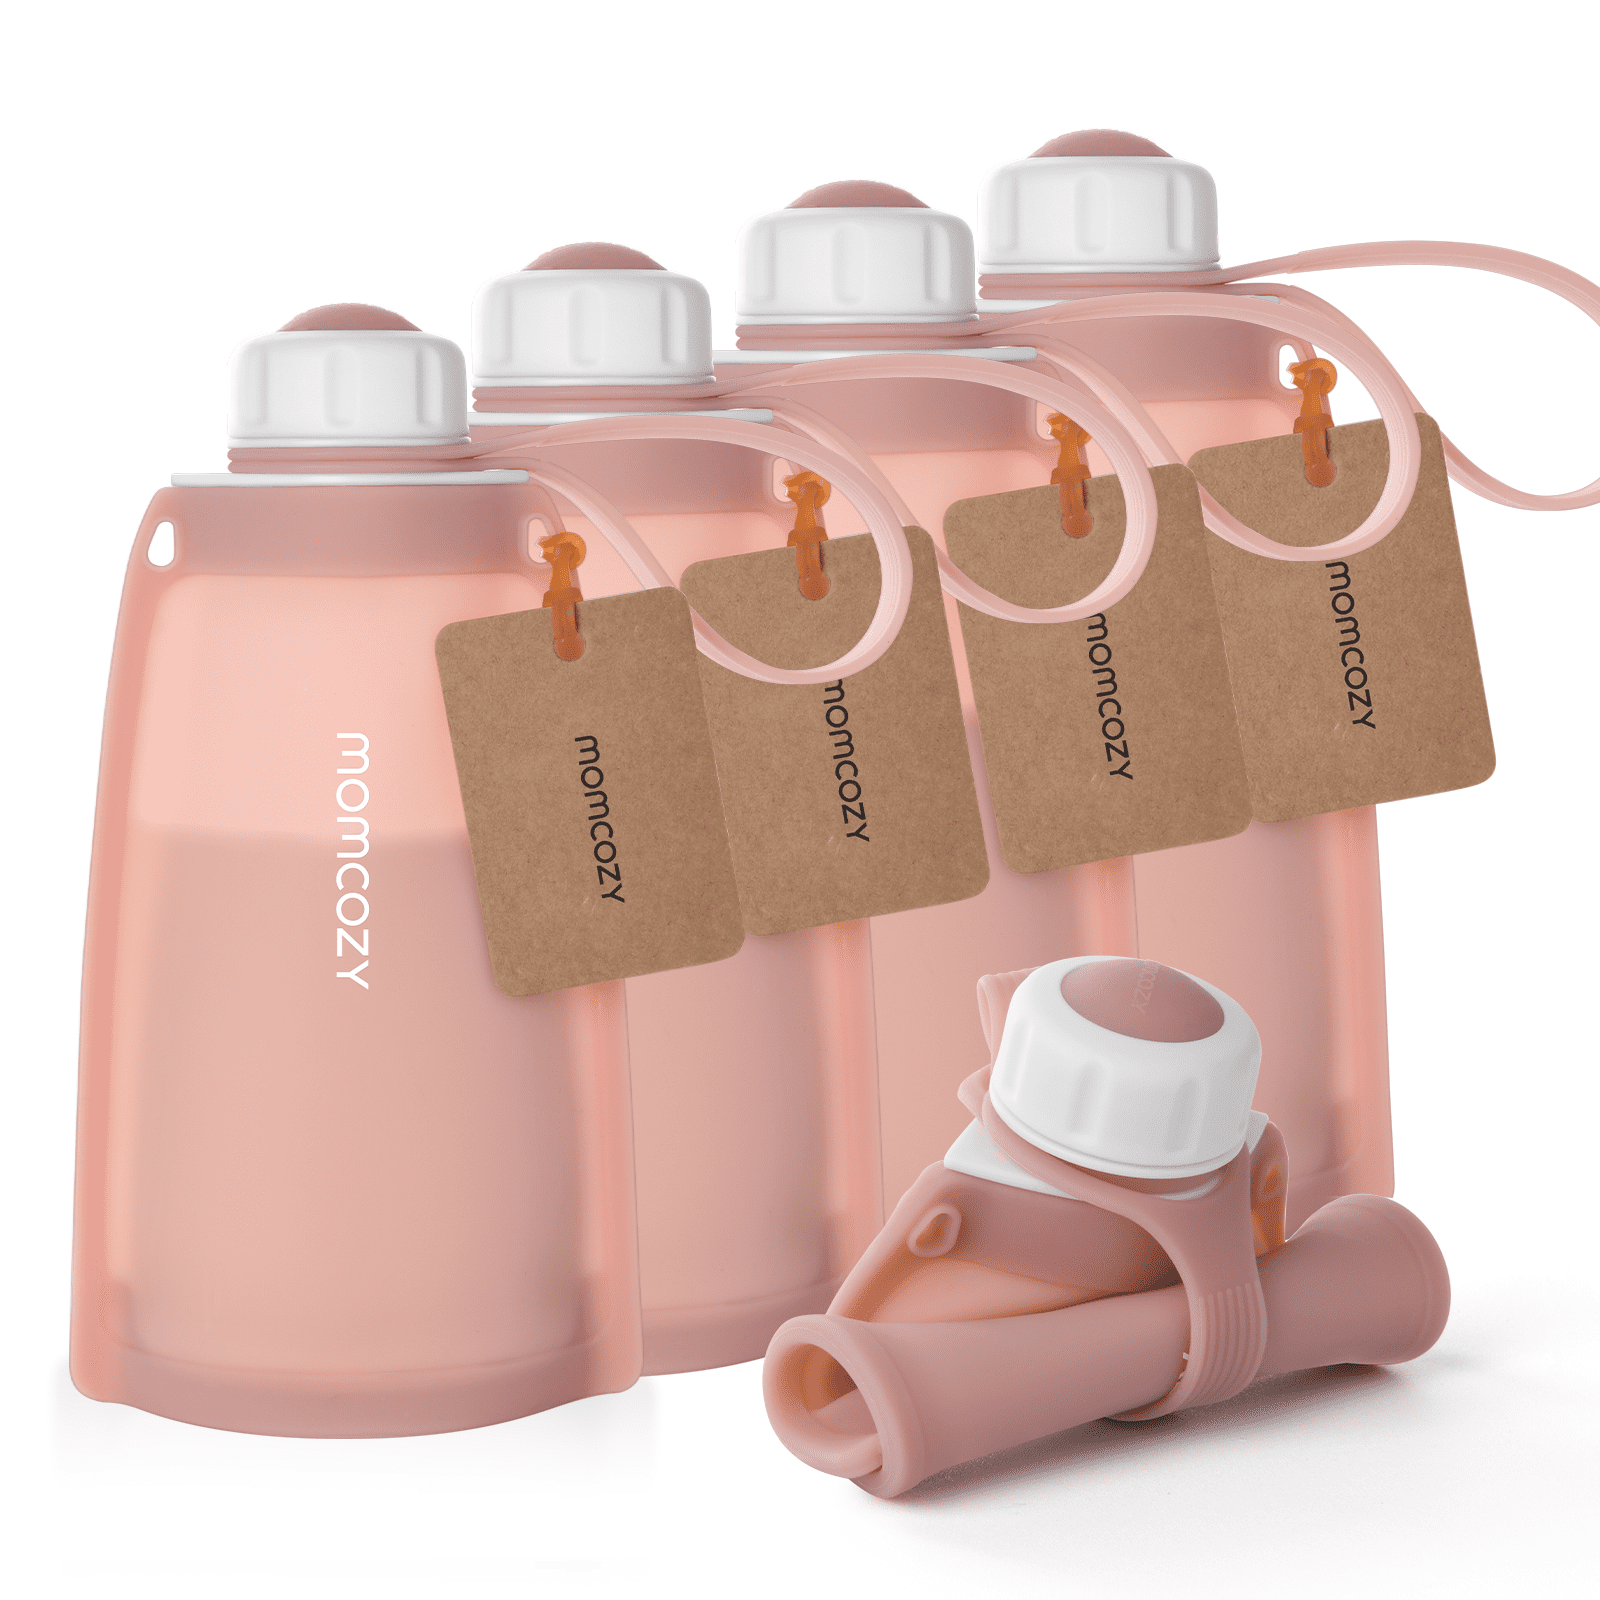 Momcozy breast milk storage bags 120 – A Discount Treasure